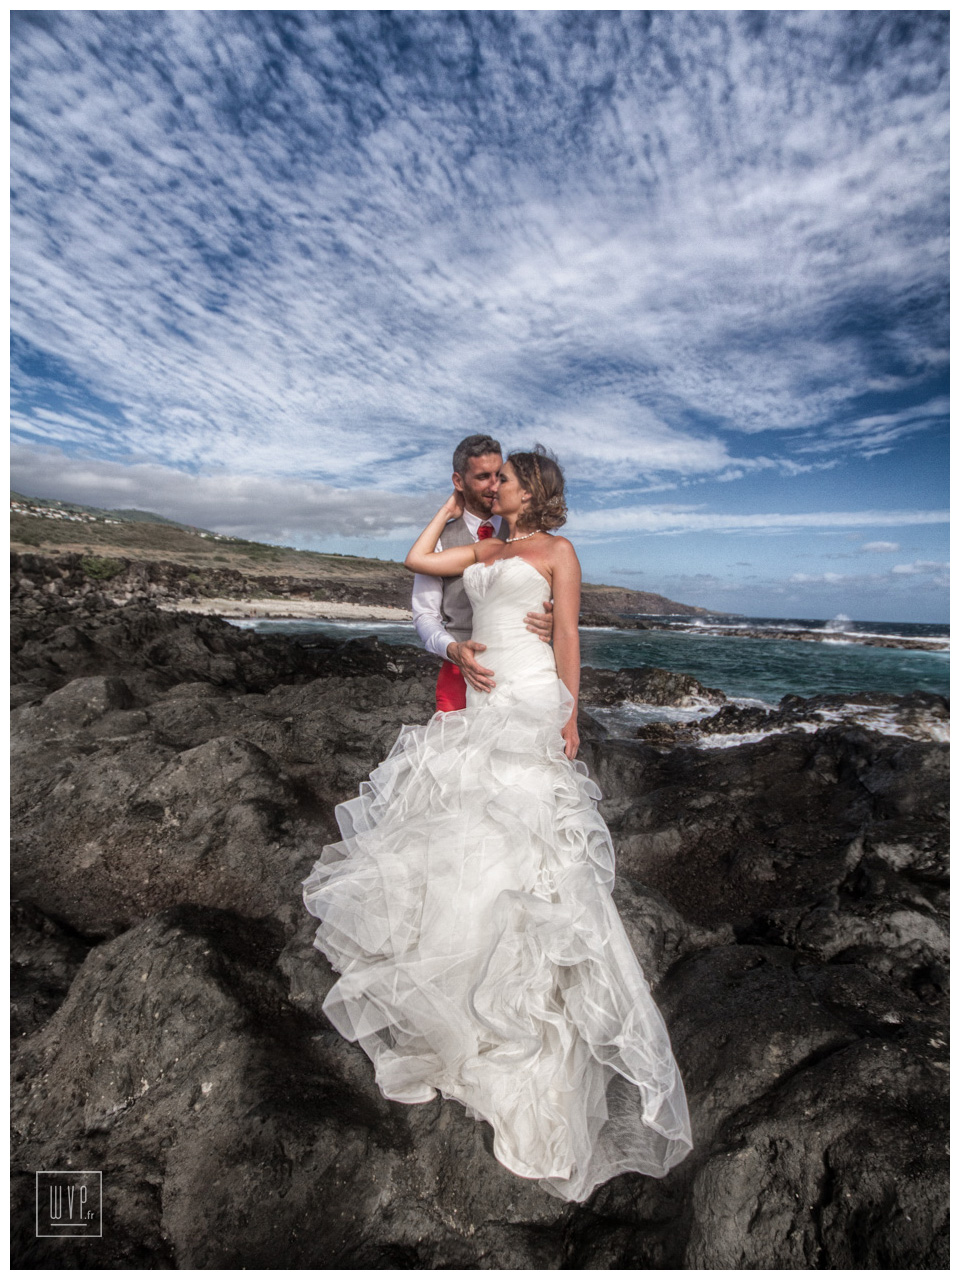 Cyriell & Alex Reunion Island